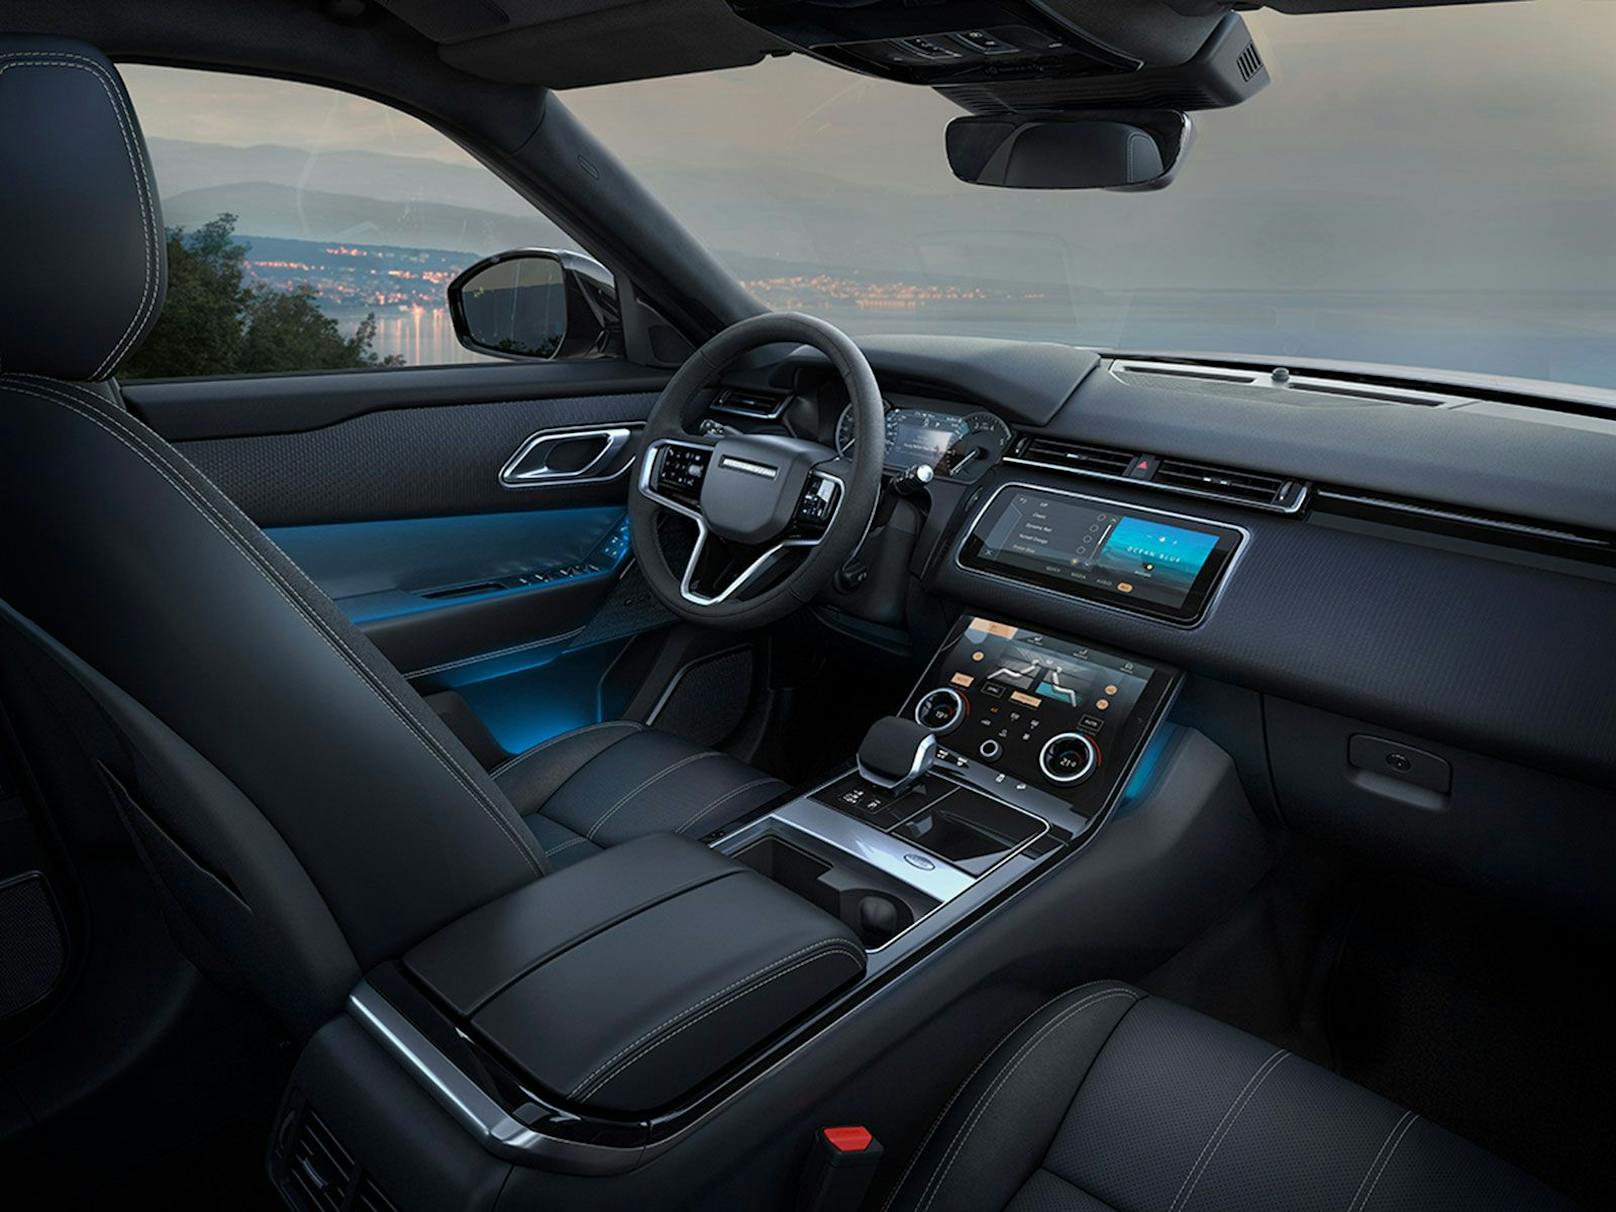 Der Innenraum des Range Rover Velar ist sehr luxuriös.